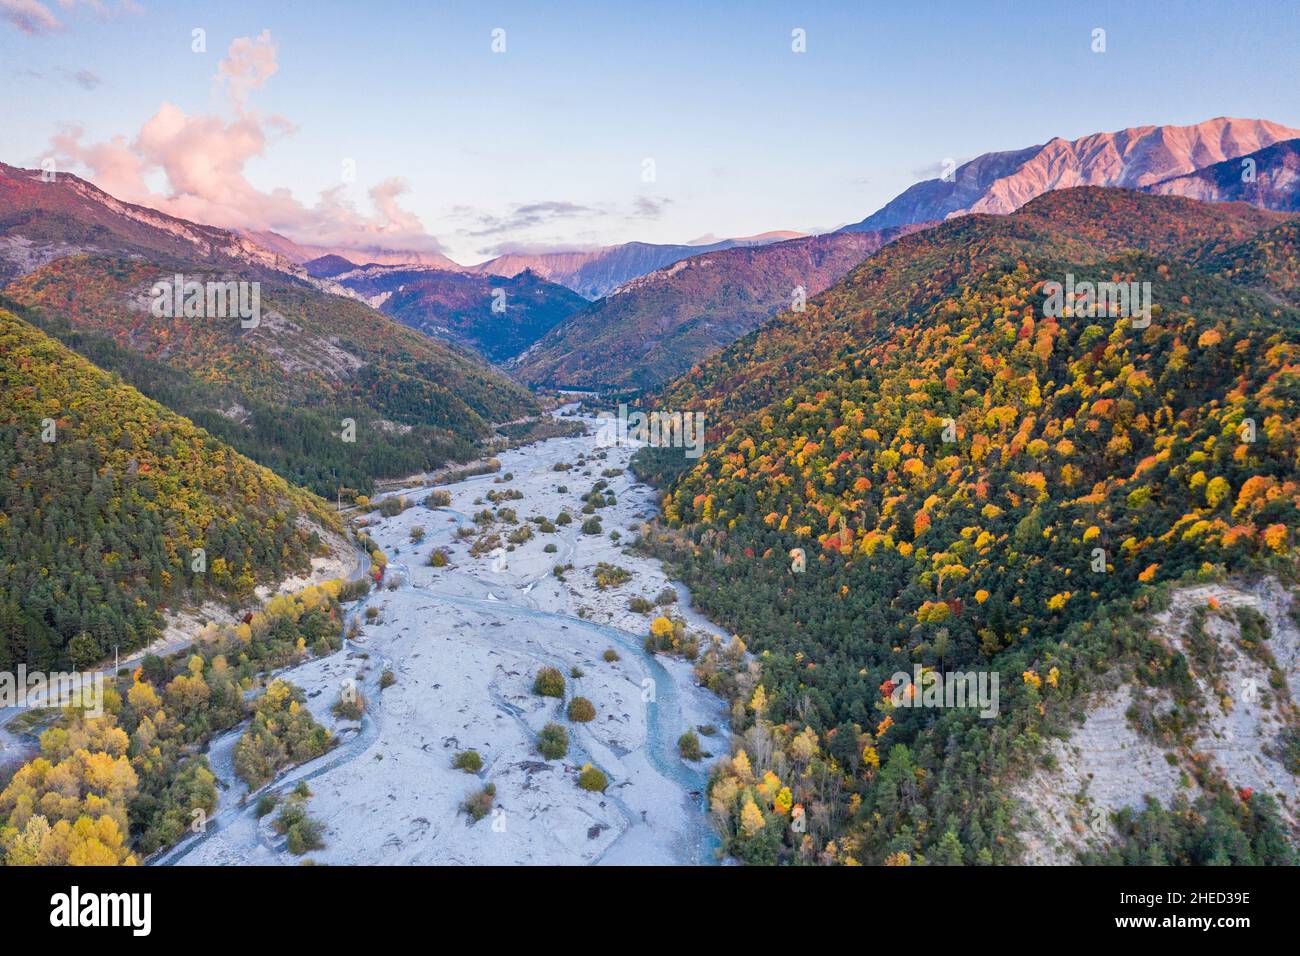 Frankreich, Alpes de Haute Provence, Reserve naturelle geologique de Haute Provence (geologisches Naturschutzgebiet Haute Provence), La Javie, Hochtal von Stockfoto